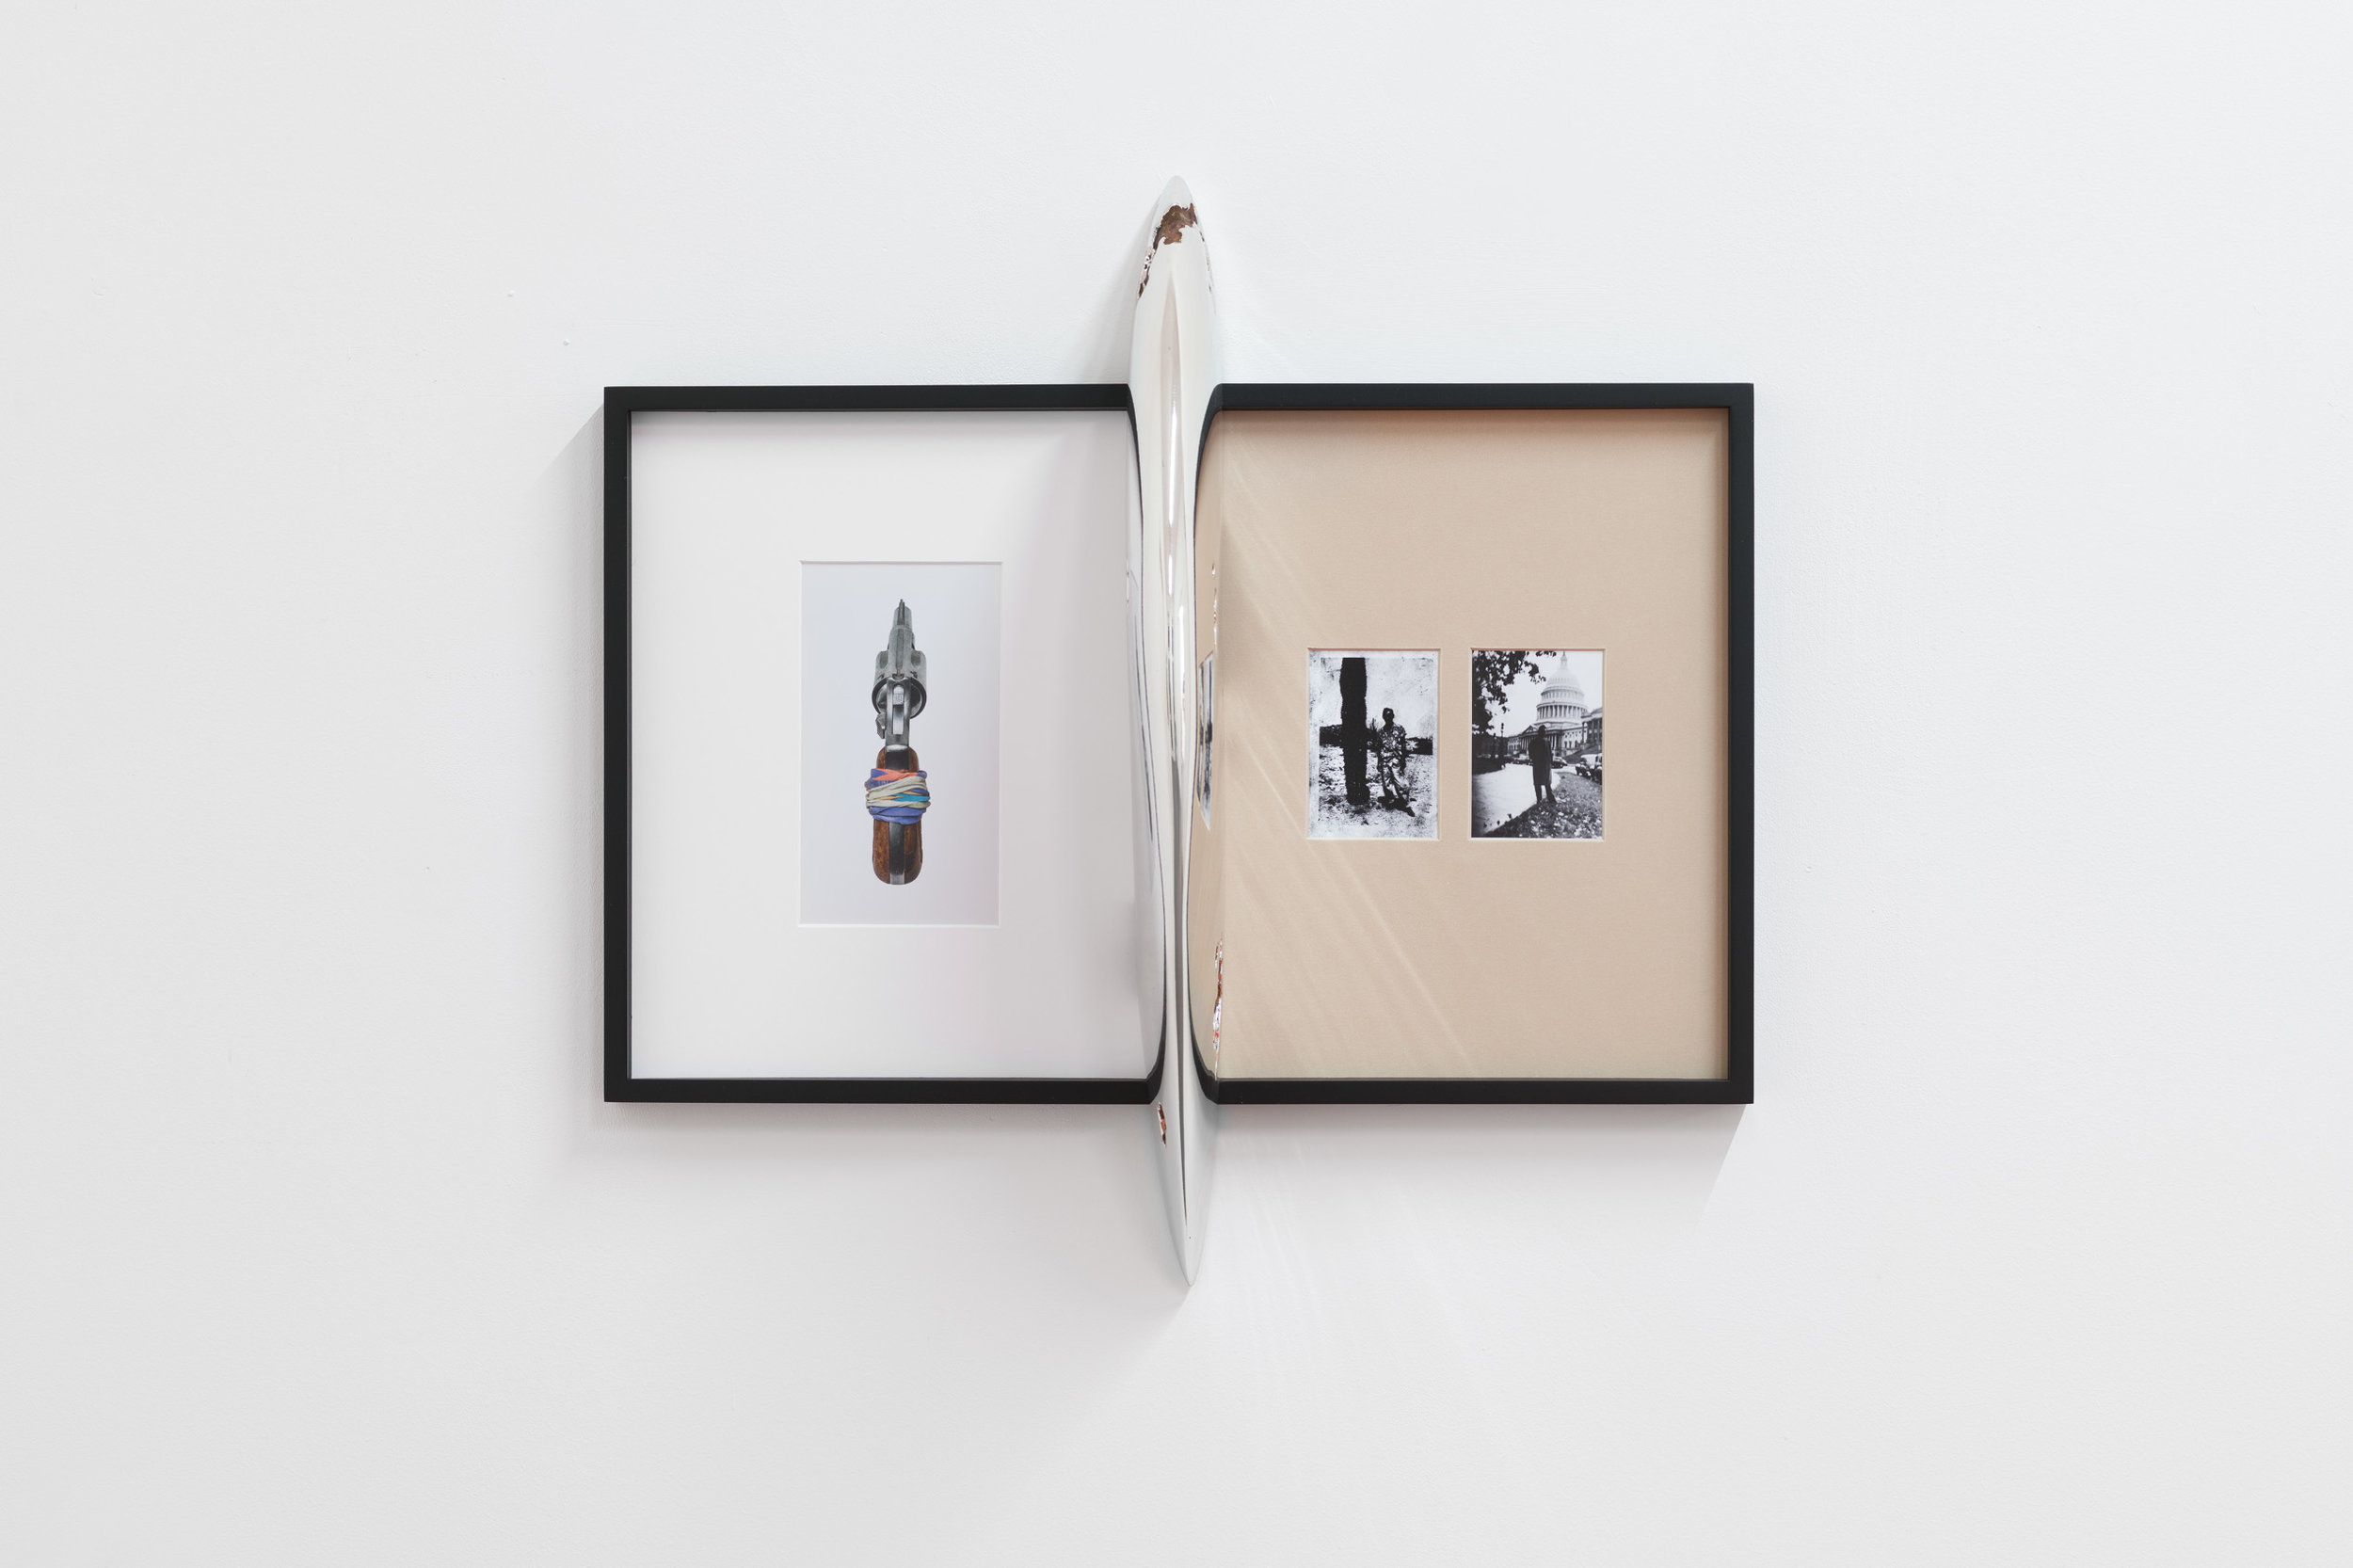  Alex Ito,  Possession I (passive aggressor),  2018, Chromed resin mounted on framed inkjet print, 60 x 61 x 20 cm 